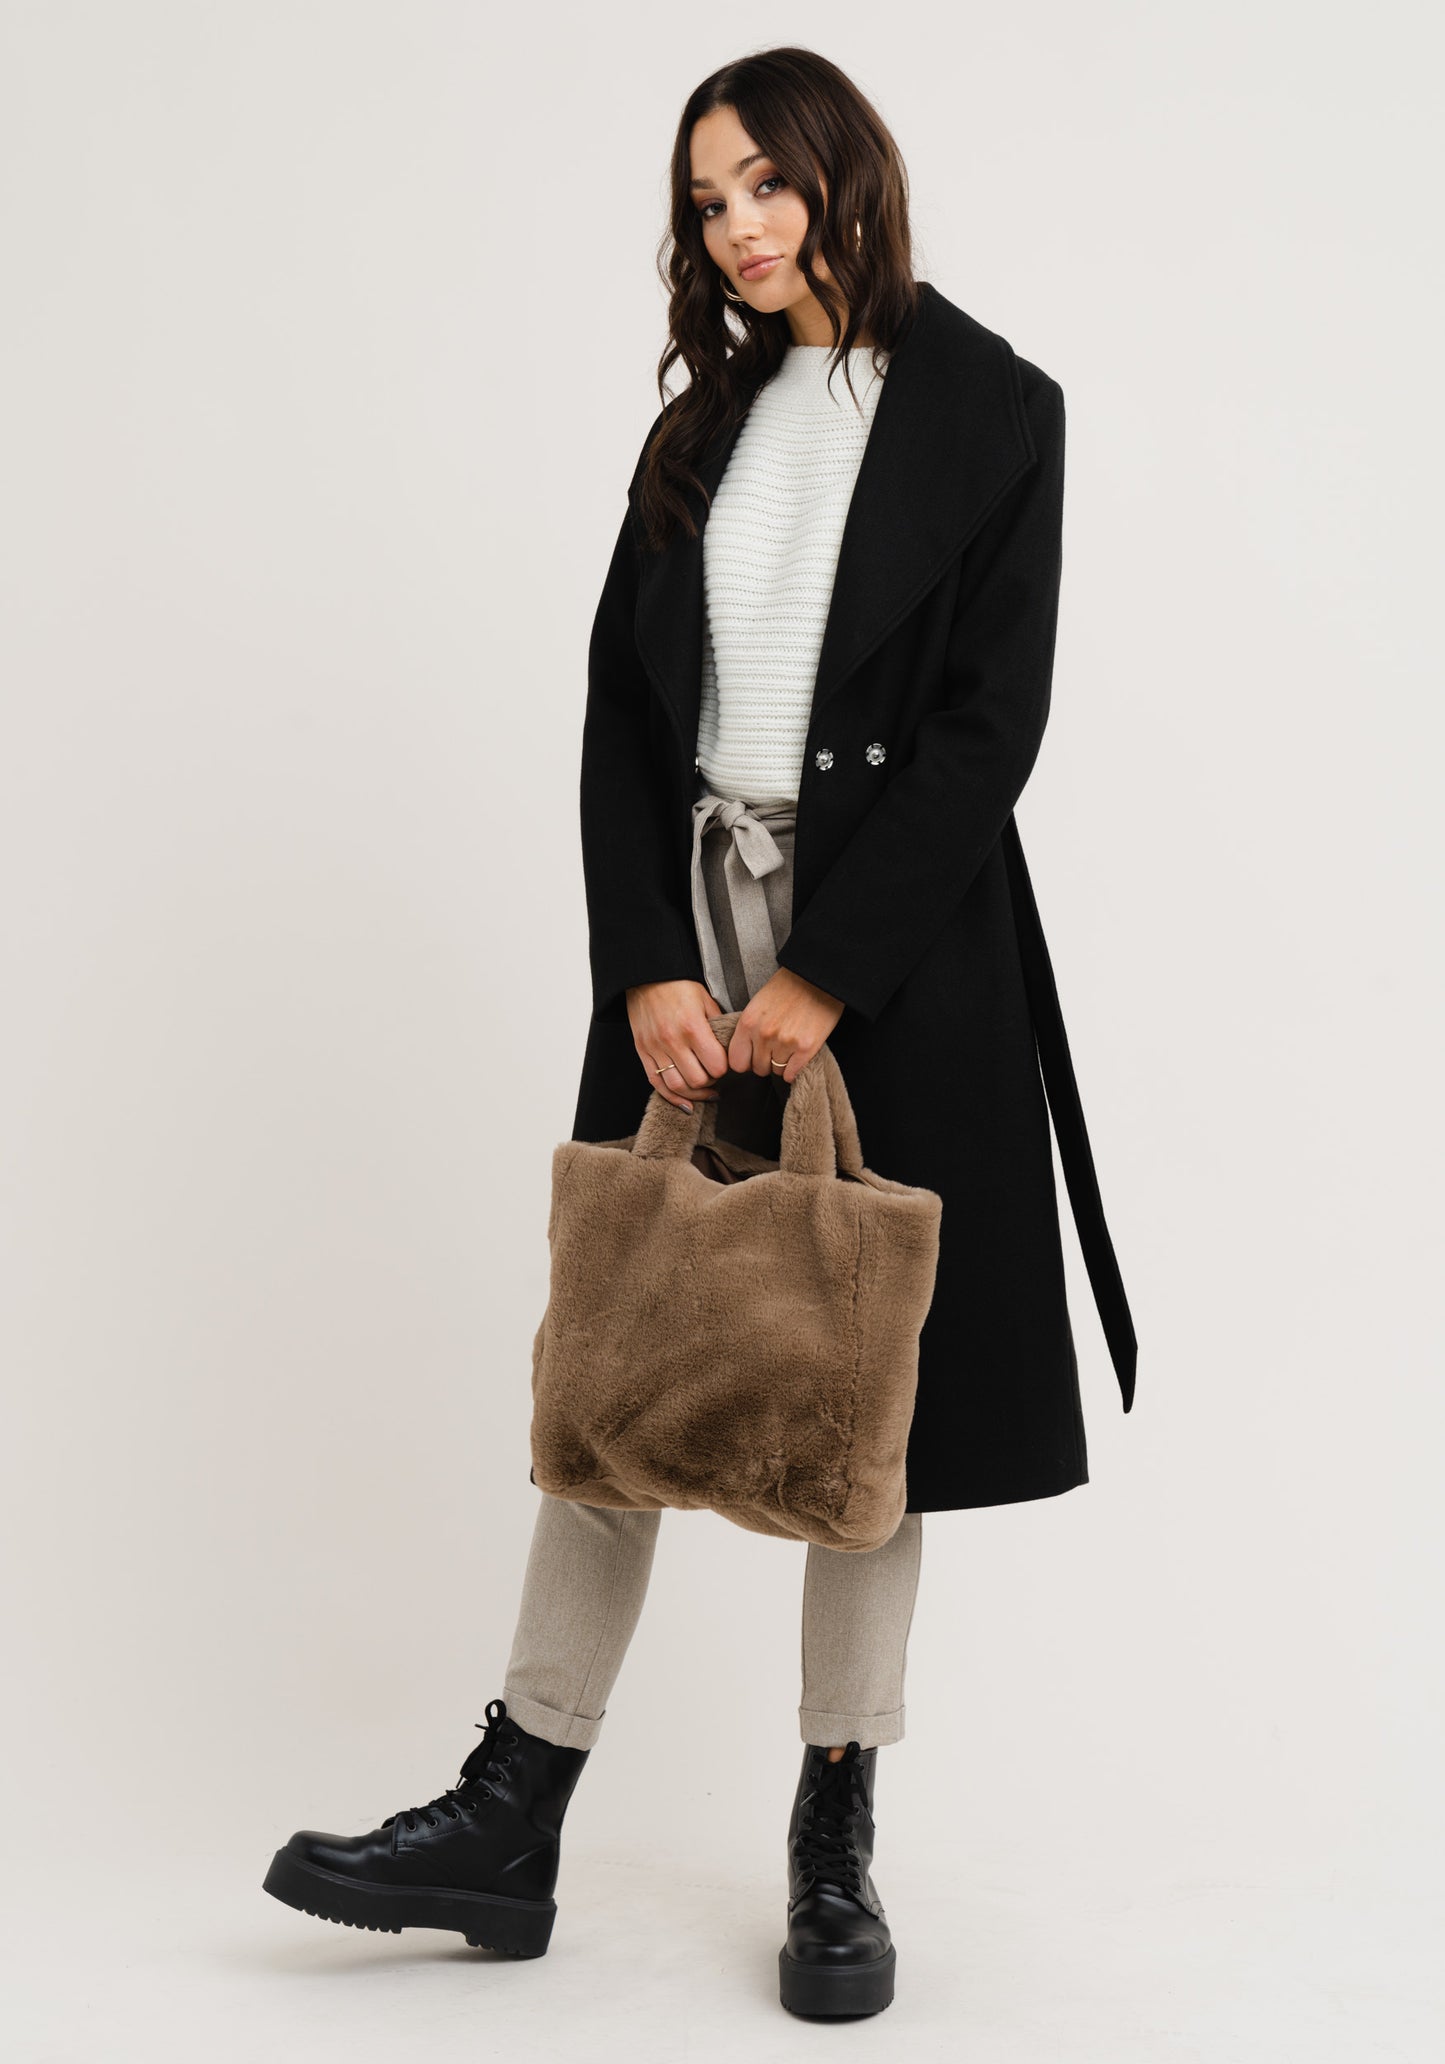 Fluffy shoulder bag - Anna shoes & more